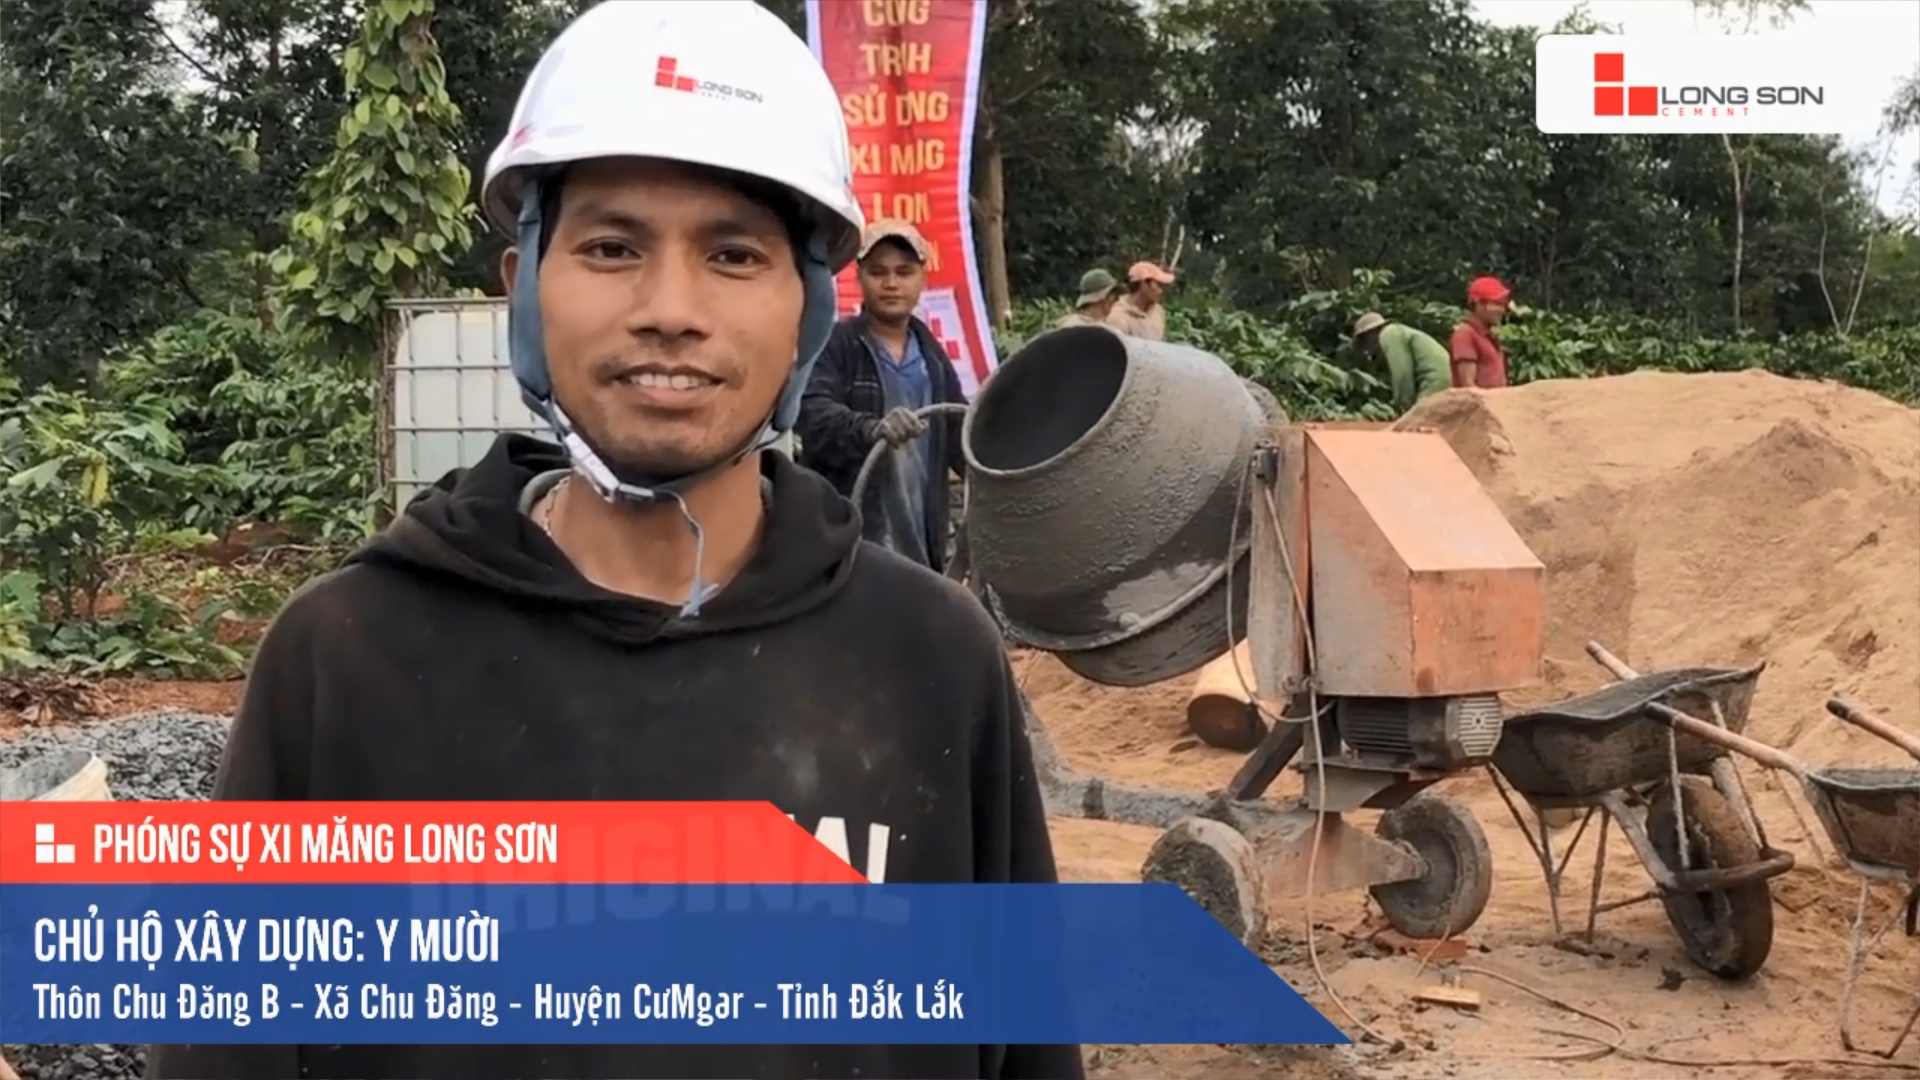 Phóng sự công trình sử dụng Xi măng Long Sơn tại Đắk Lắk 17.11.2020